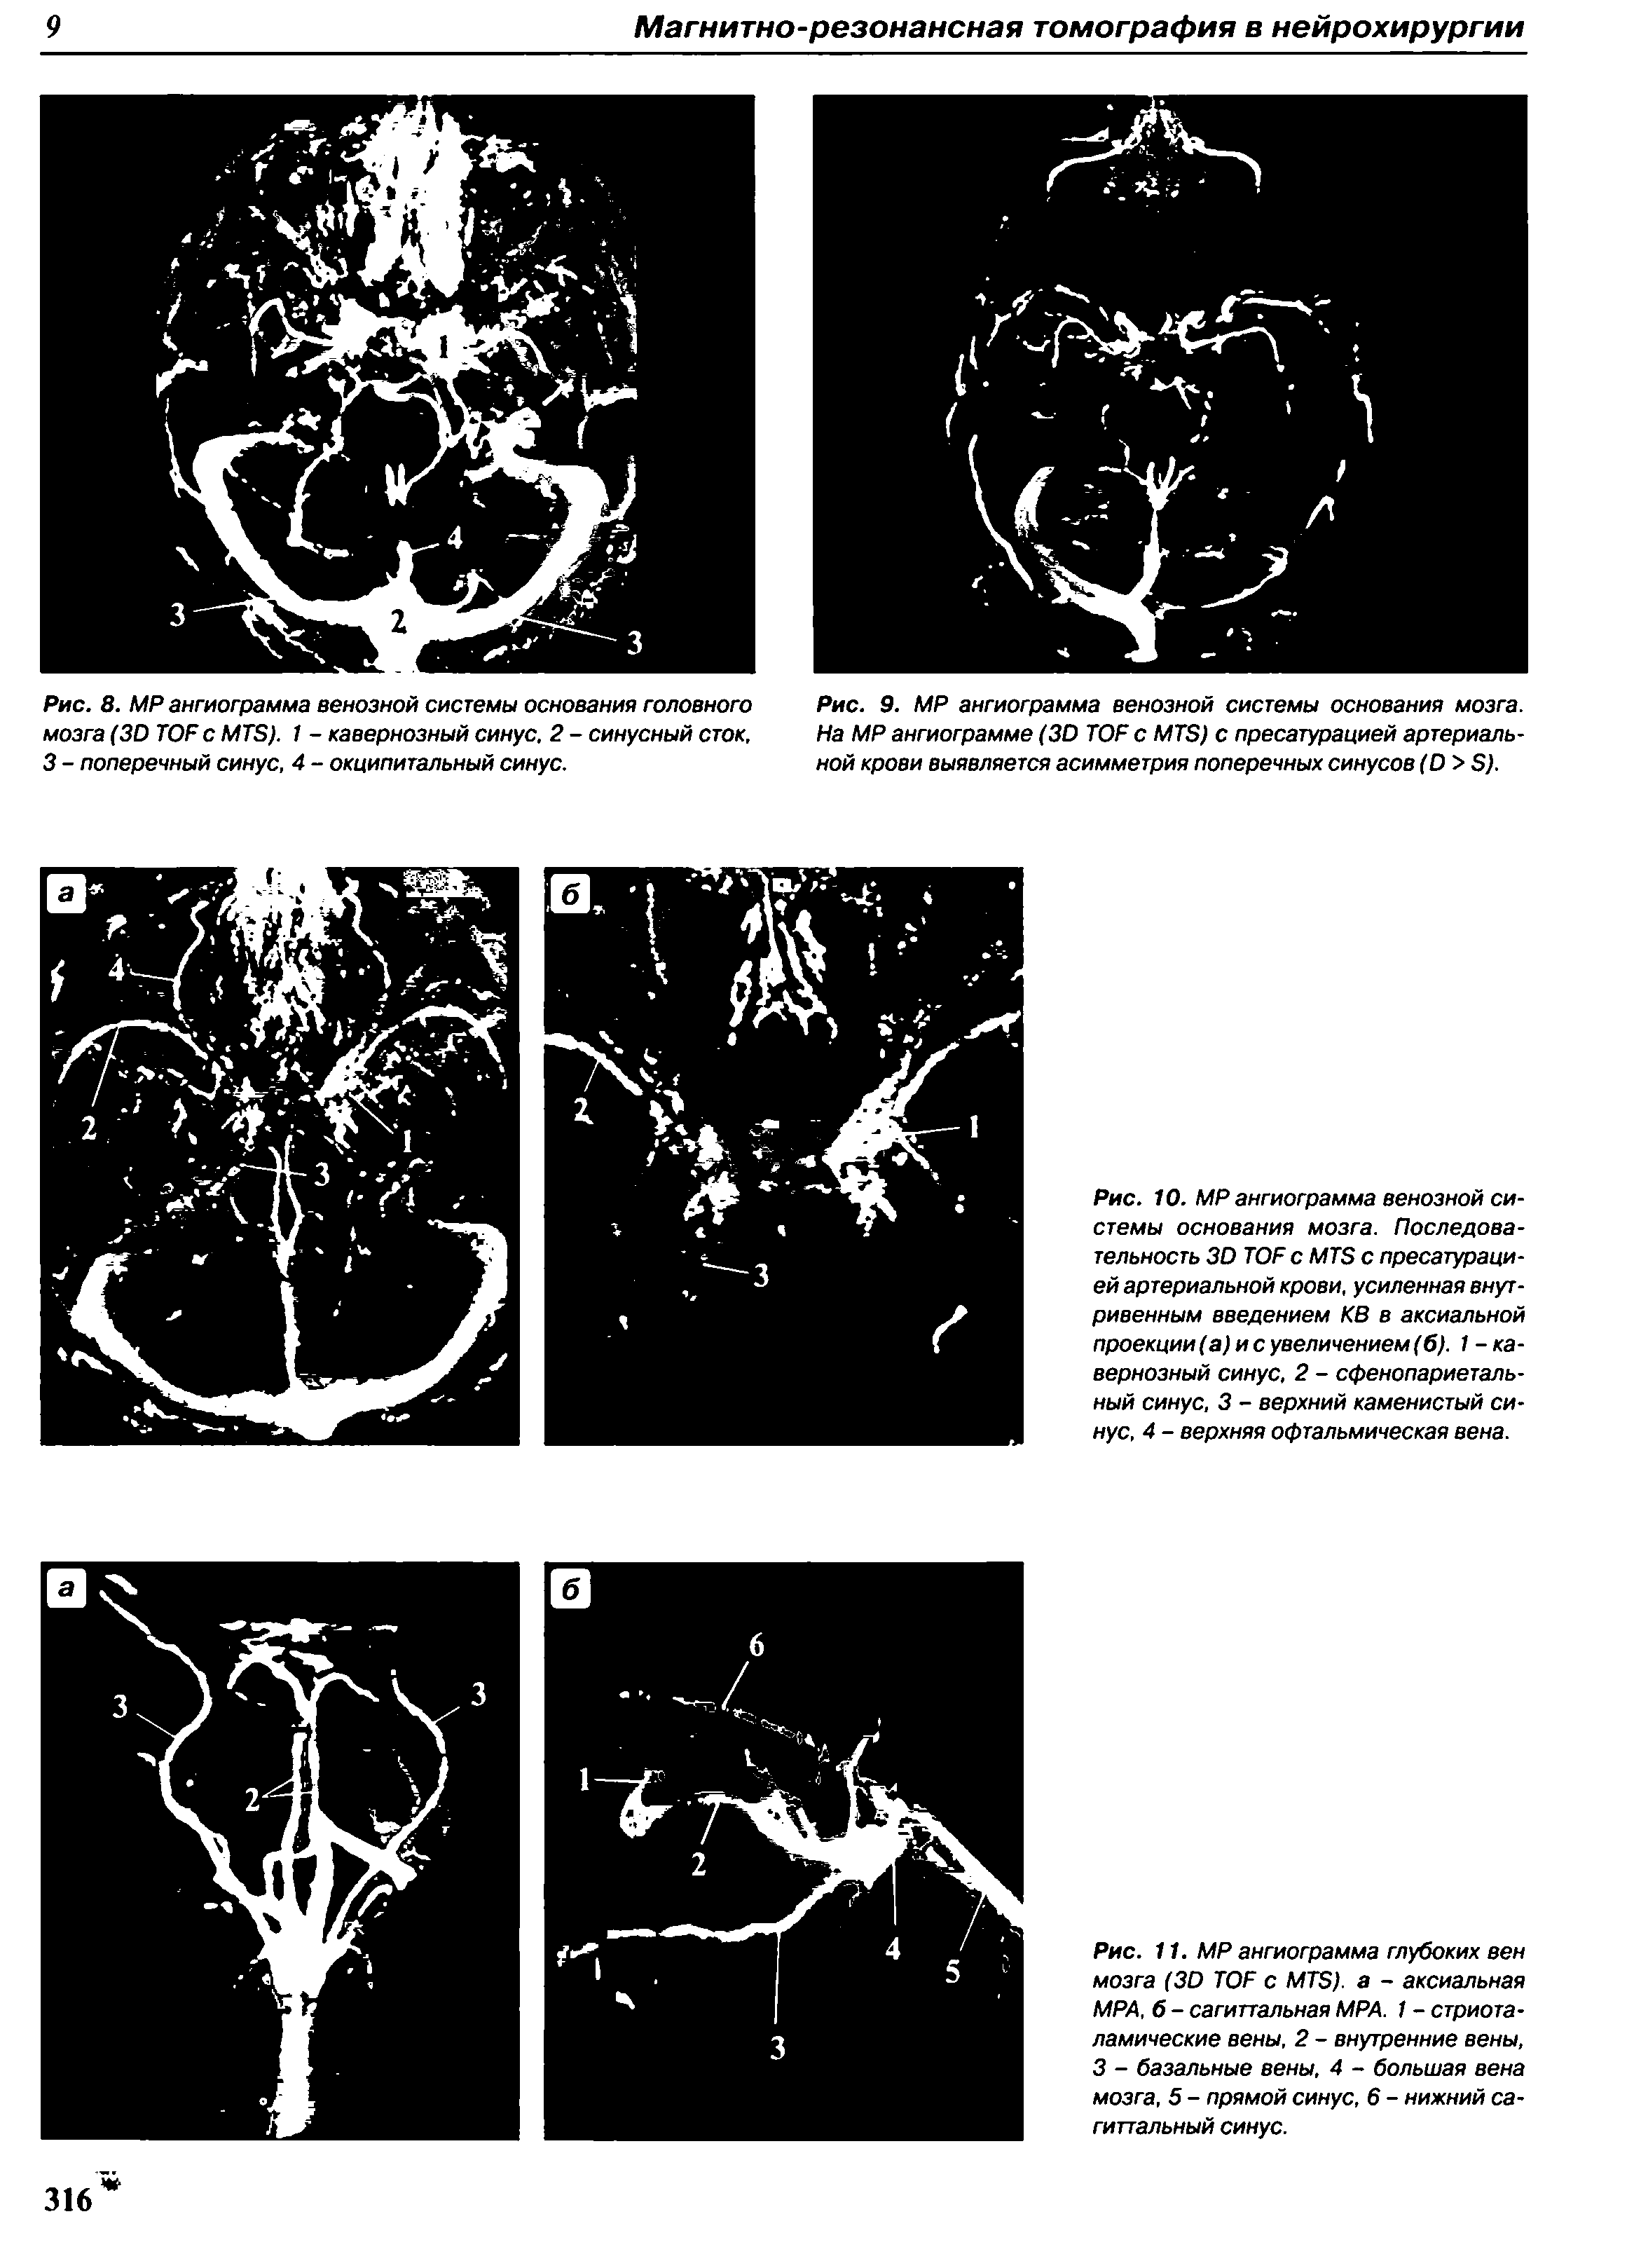 Рис. 8. МР ангиограмма венозной системы основания головного мозга (3D TOF с MTS). 1 - кавернозный синус, 2 - синусный сток, 3 - поперечный синус, 4 - окципитальный синус.